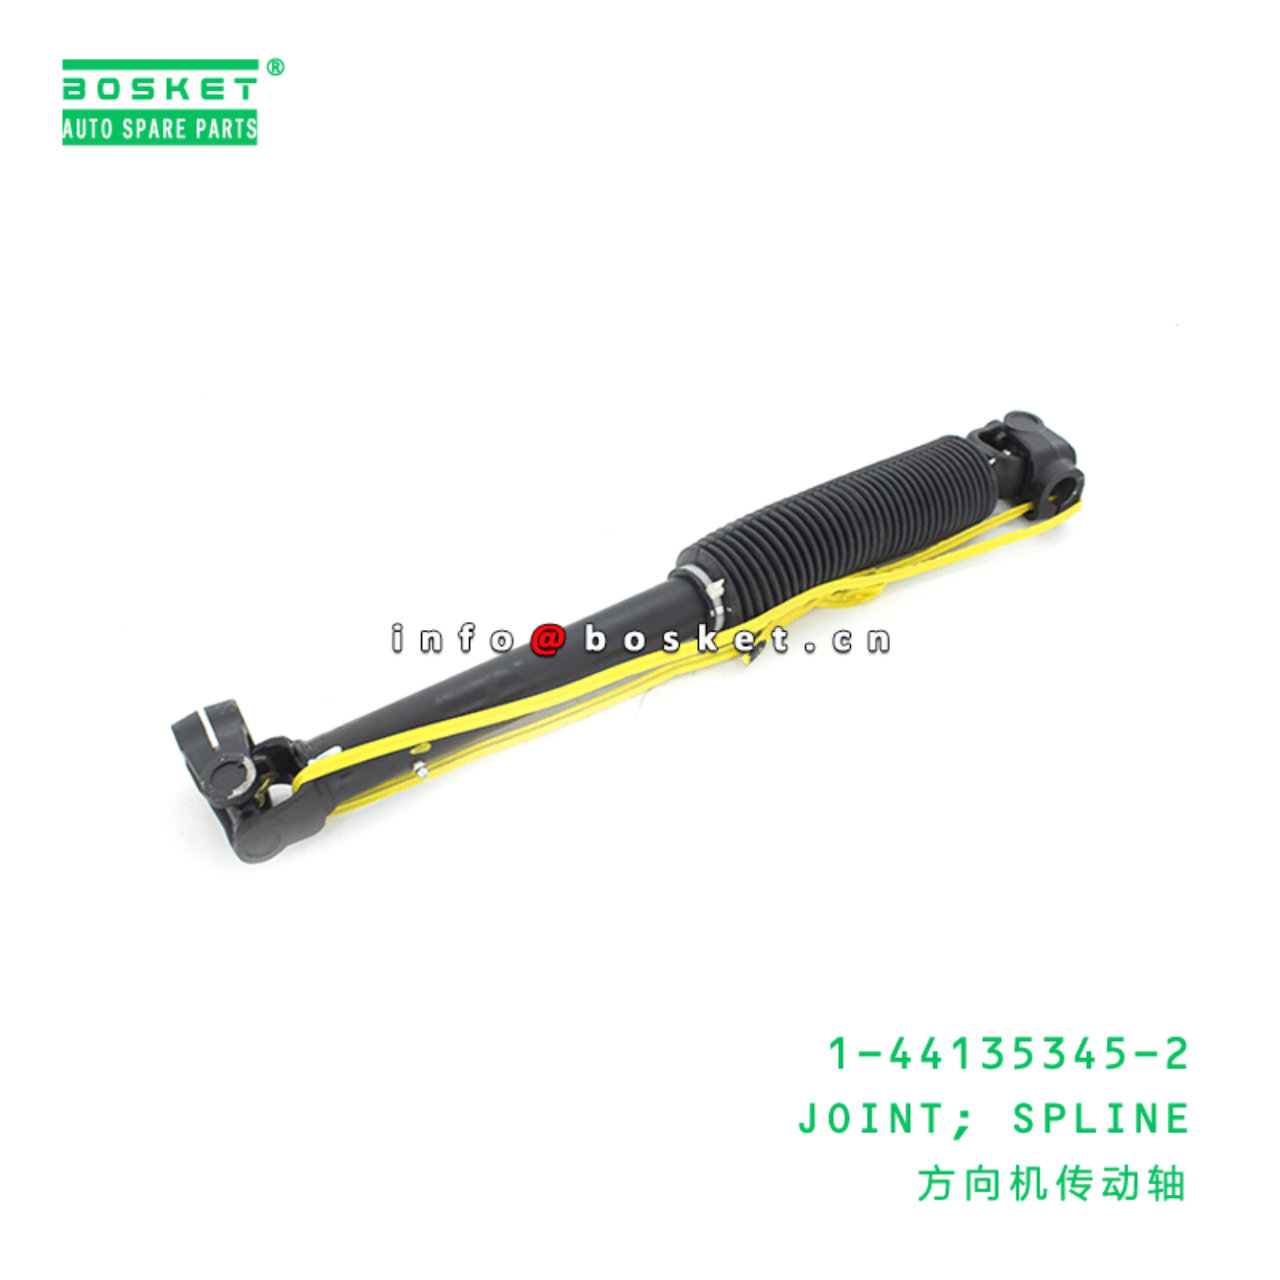  1-44135345-2 Spline Joint 1441353452 Suitable for ISUZU CXZ51 6WF1